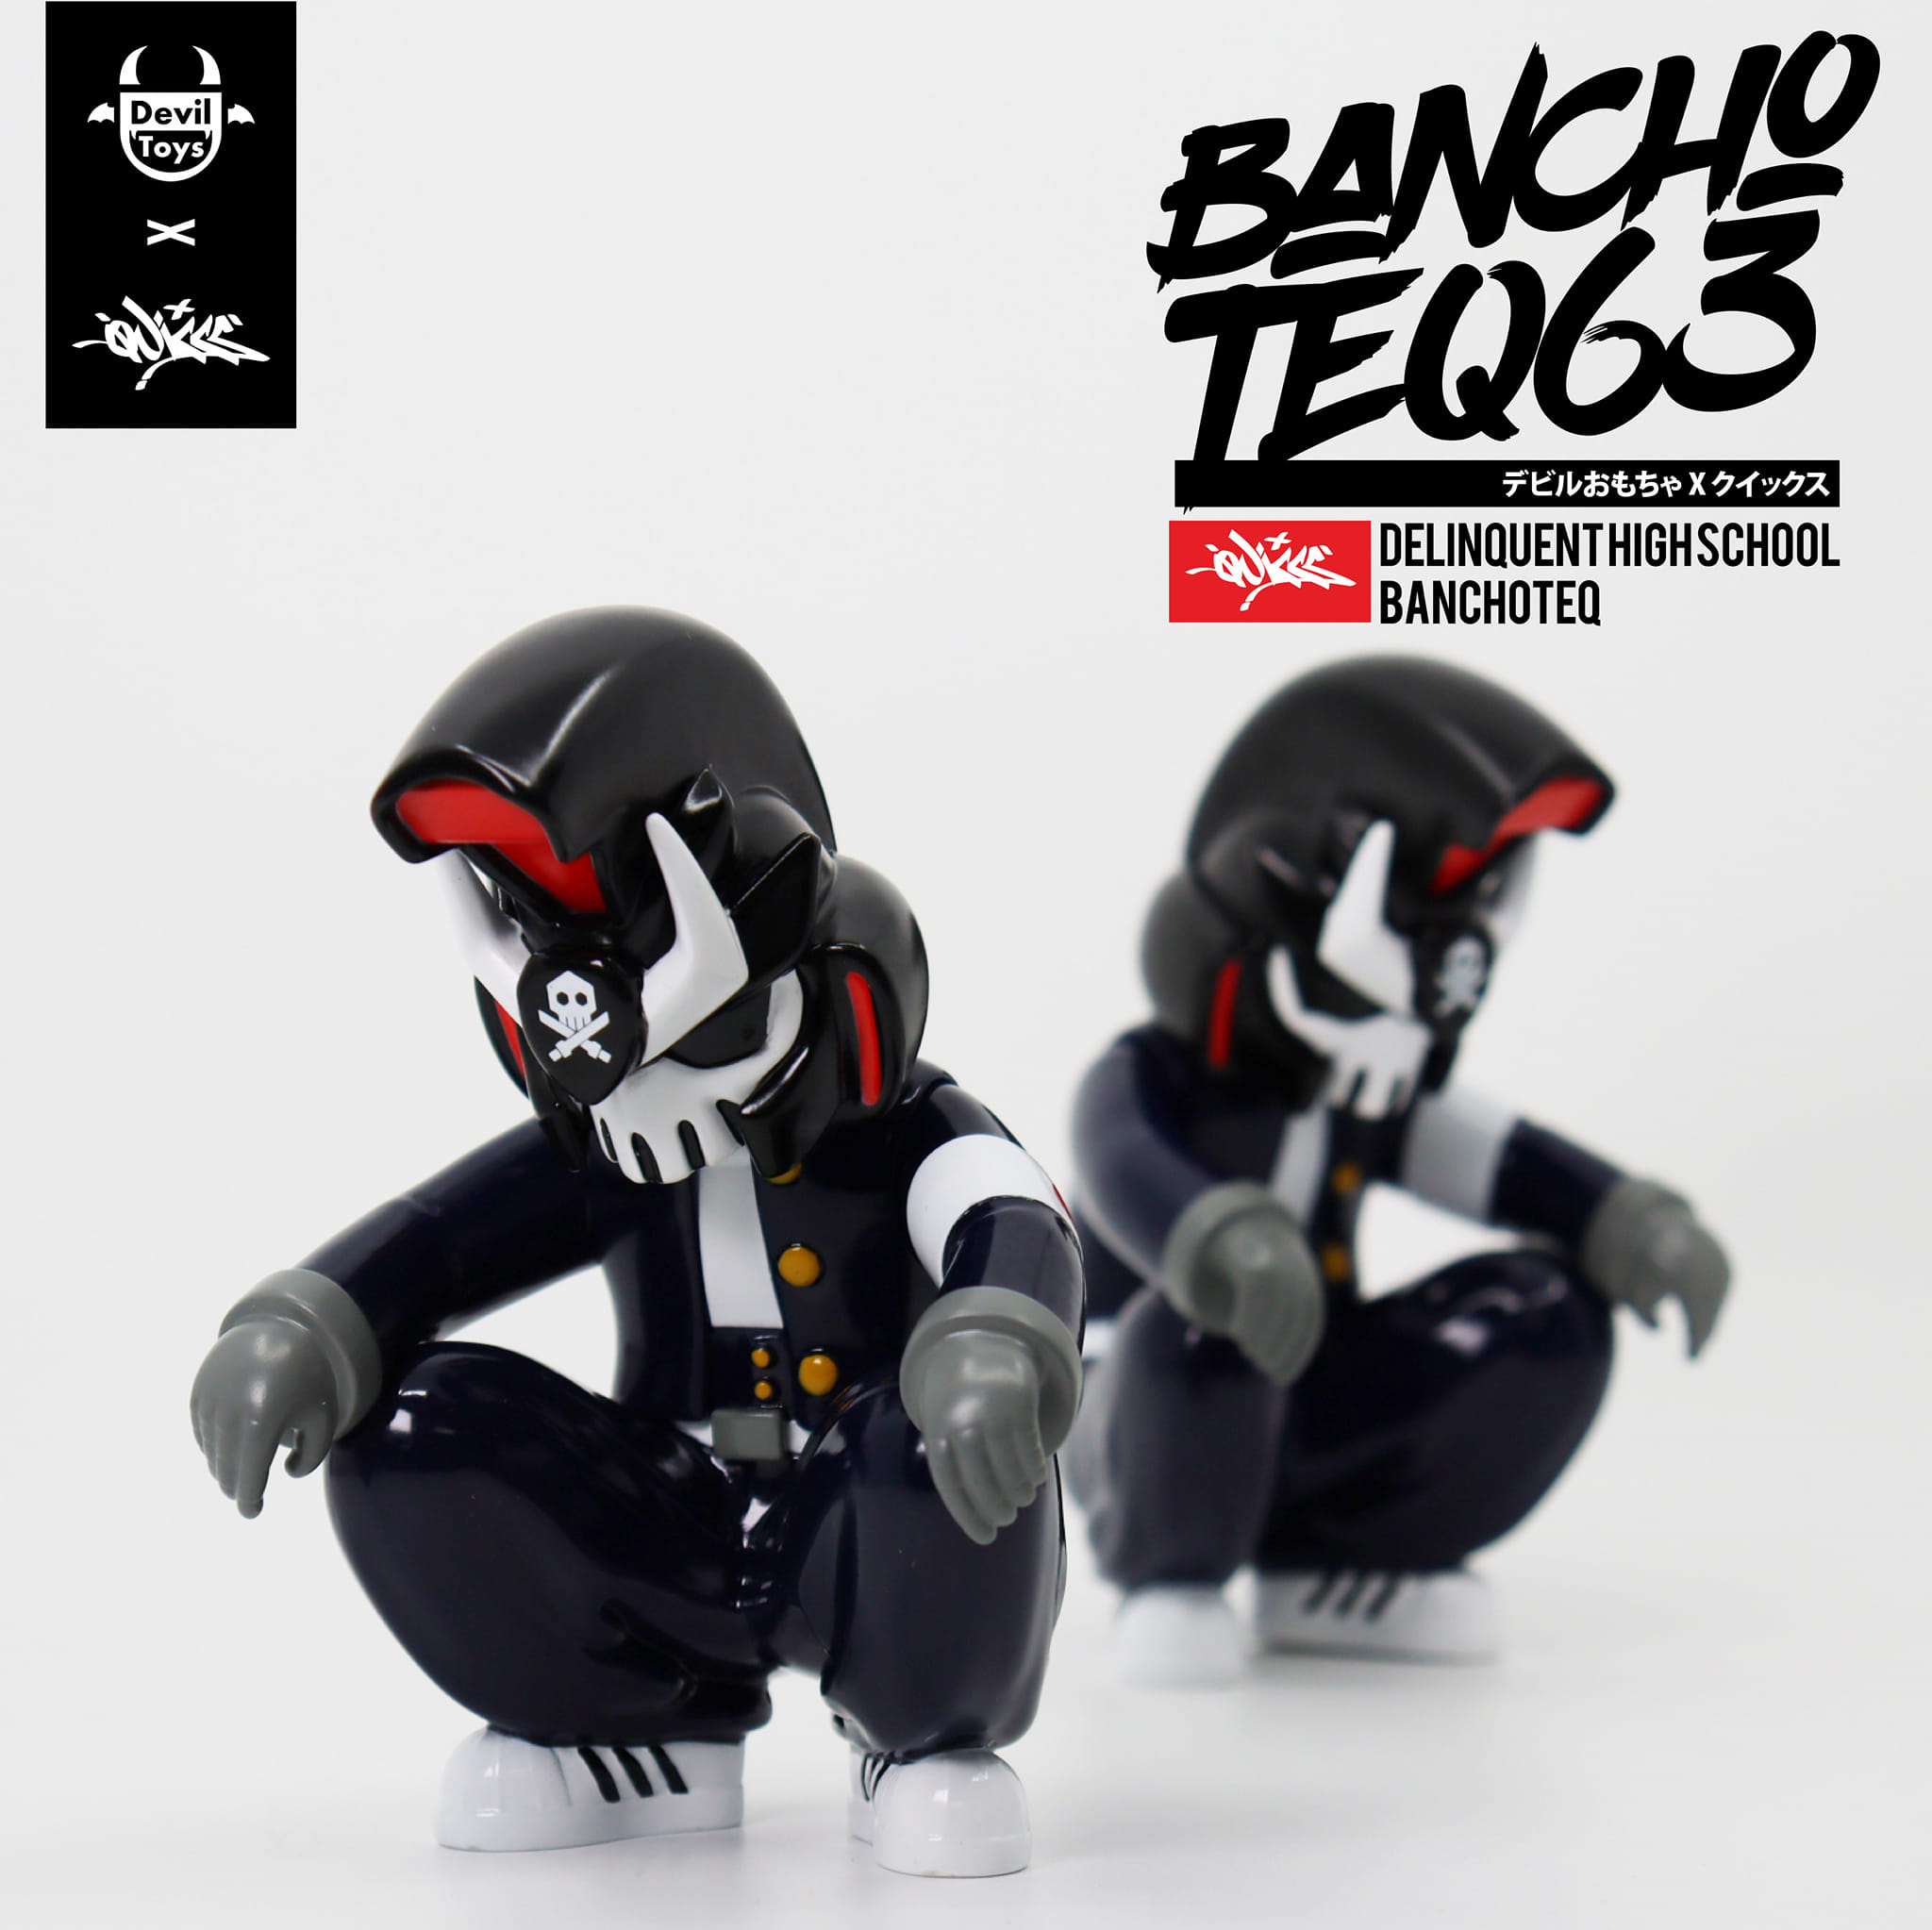 QUICCS x Devil Toys Presents The Delinquent High School BanchoTEQ